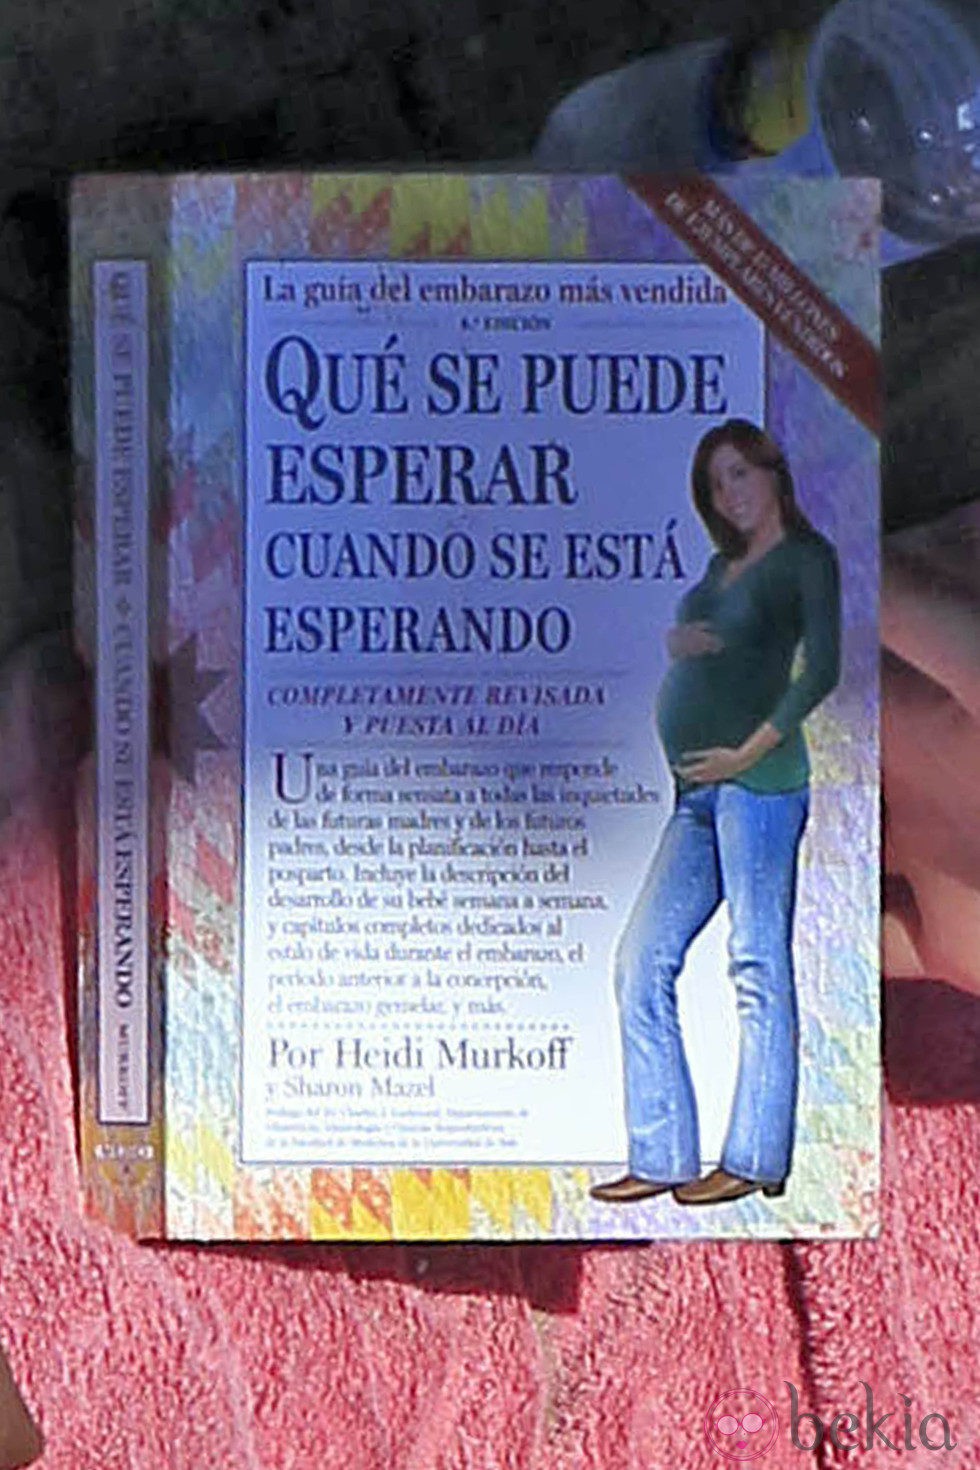 El libro que leen Olivia Molina y Sergio Mur en la playa